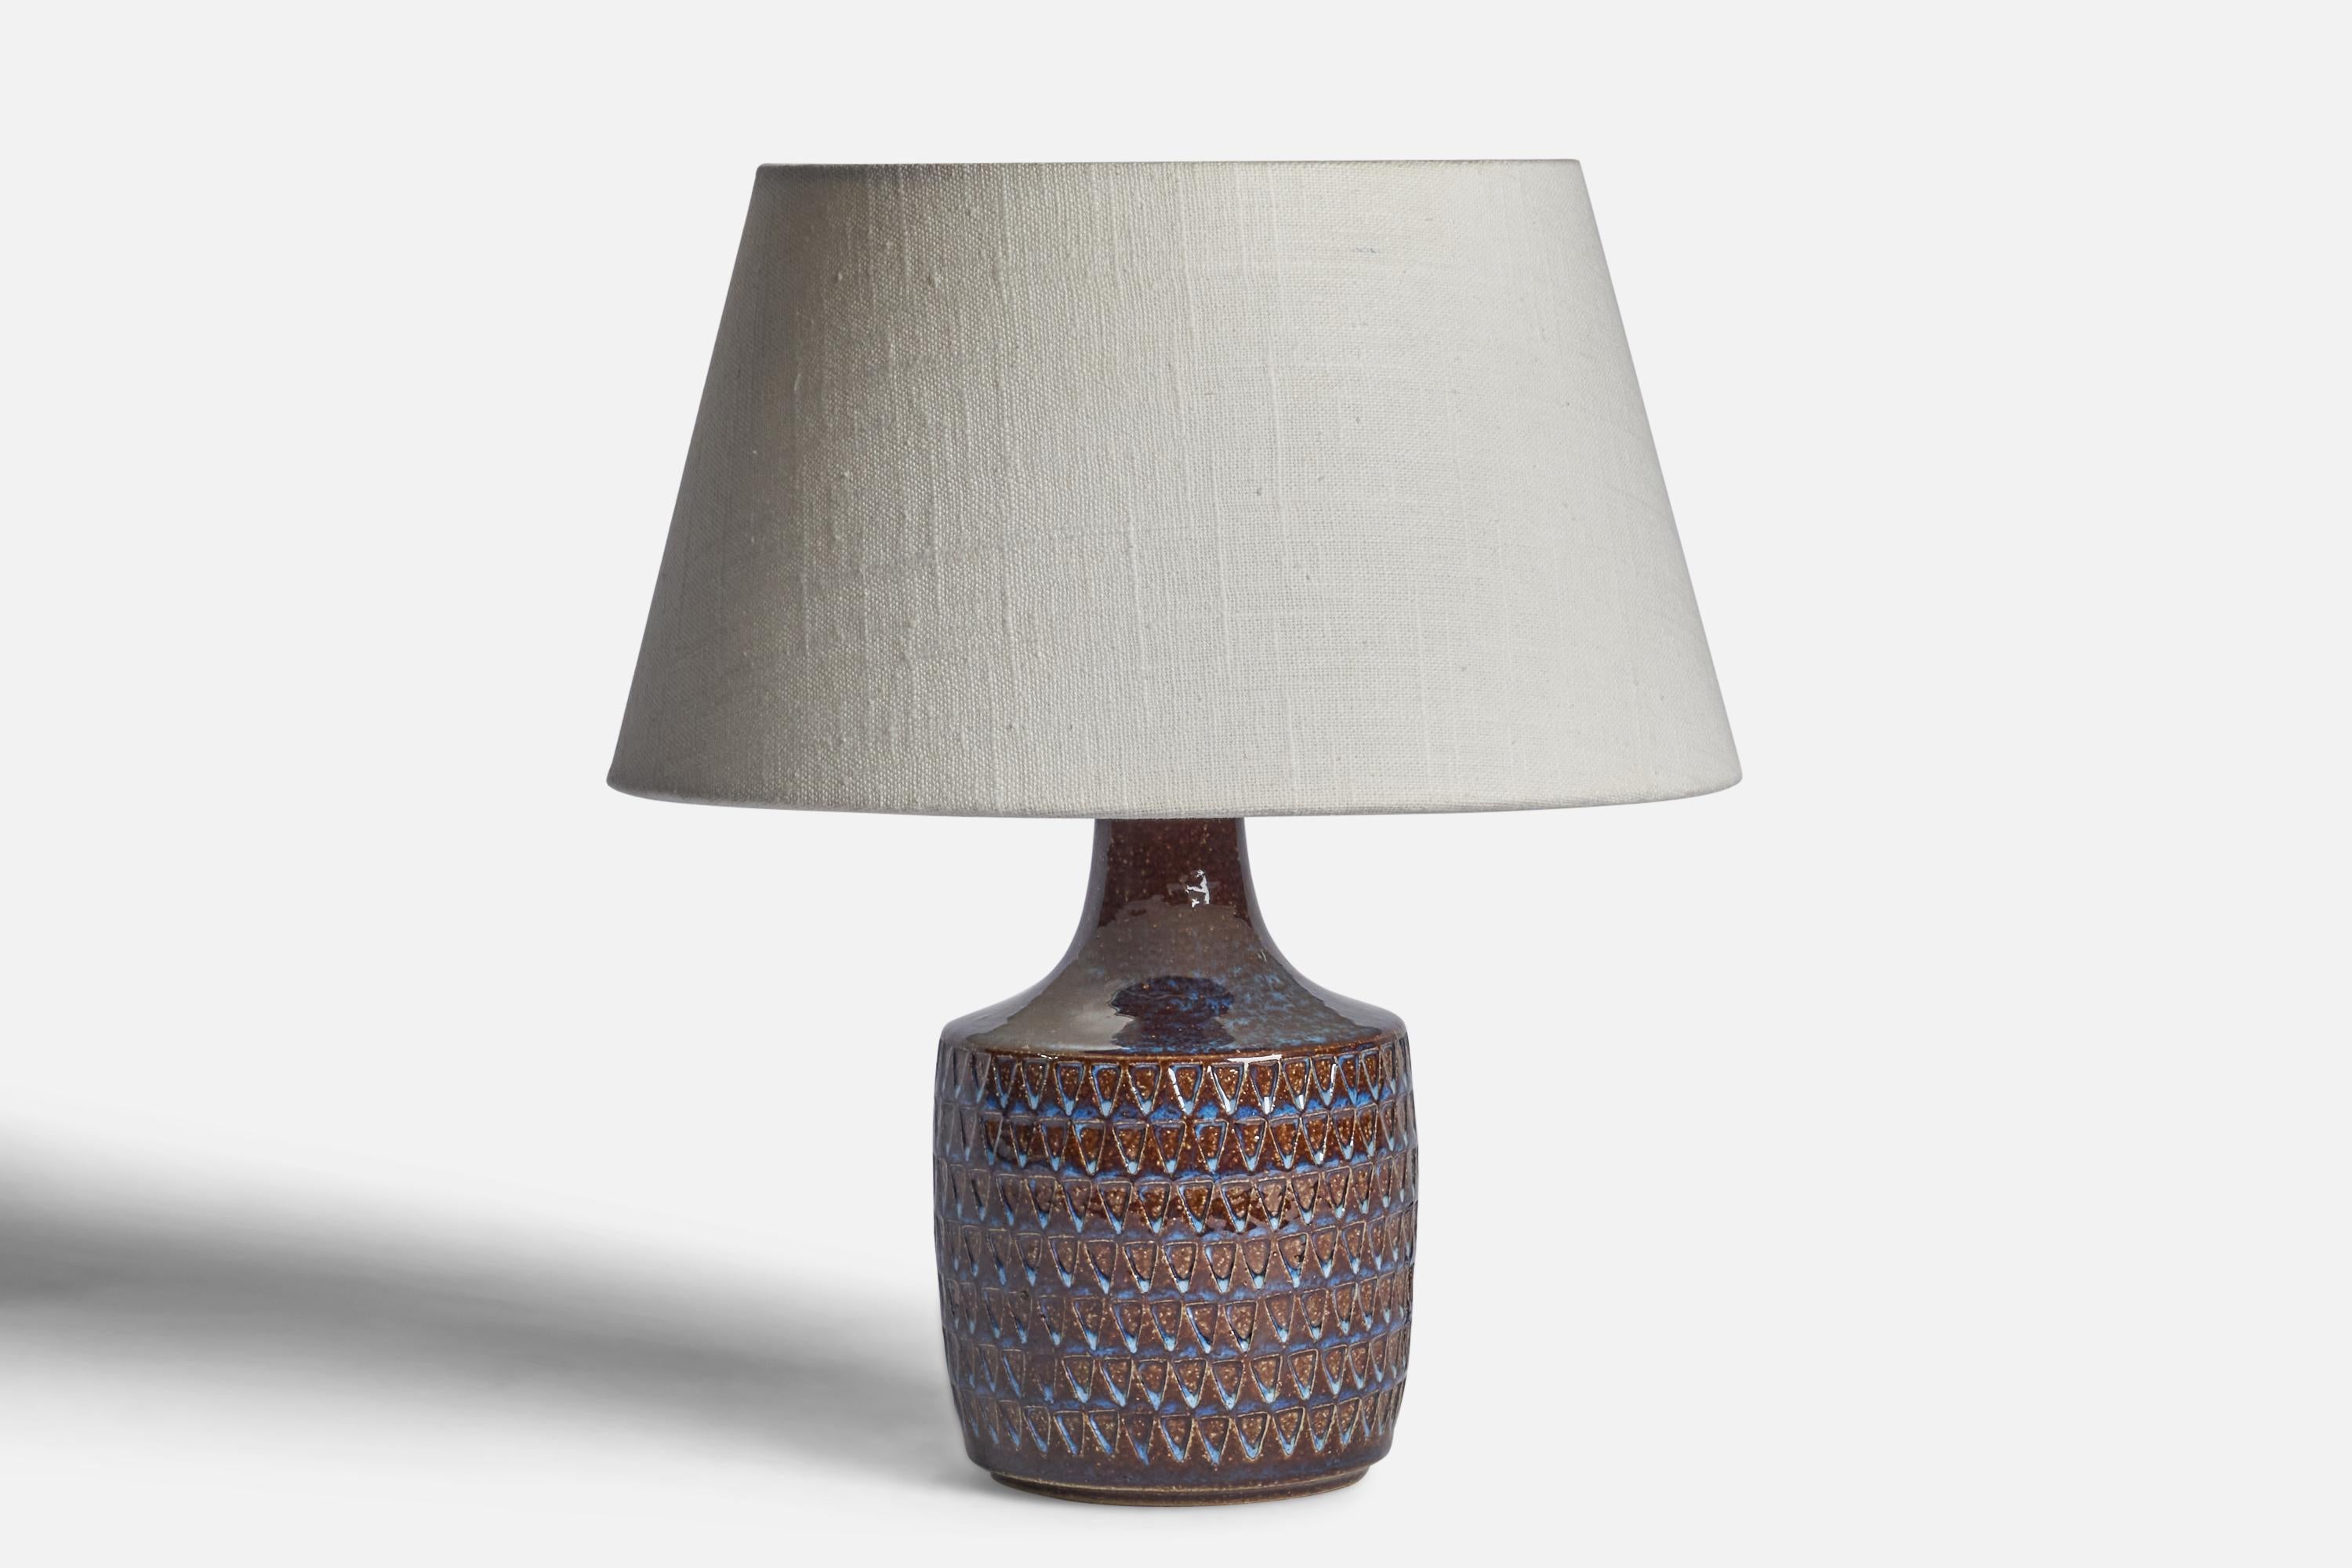 Lampe de table en grès émaillé bleu et brun, conçue et produite par 
Søholm, Bornholm, Danemark, années 1960.

Dimensions de la lampe (pouces) : 8.65